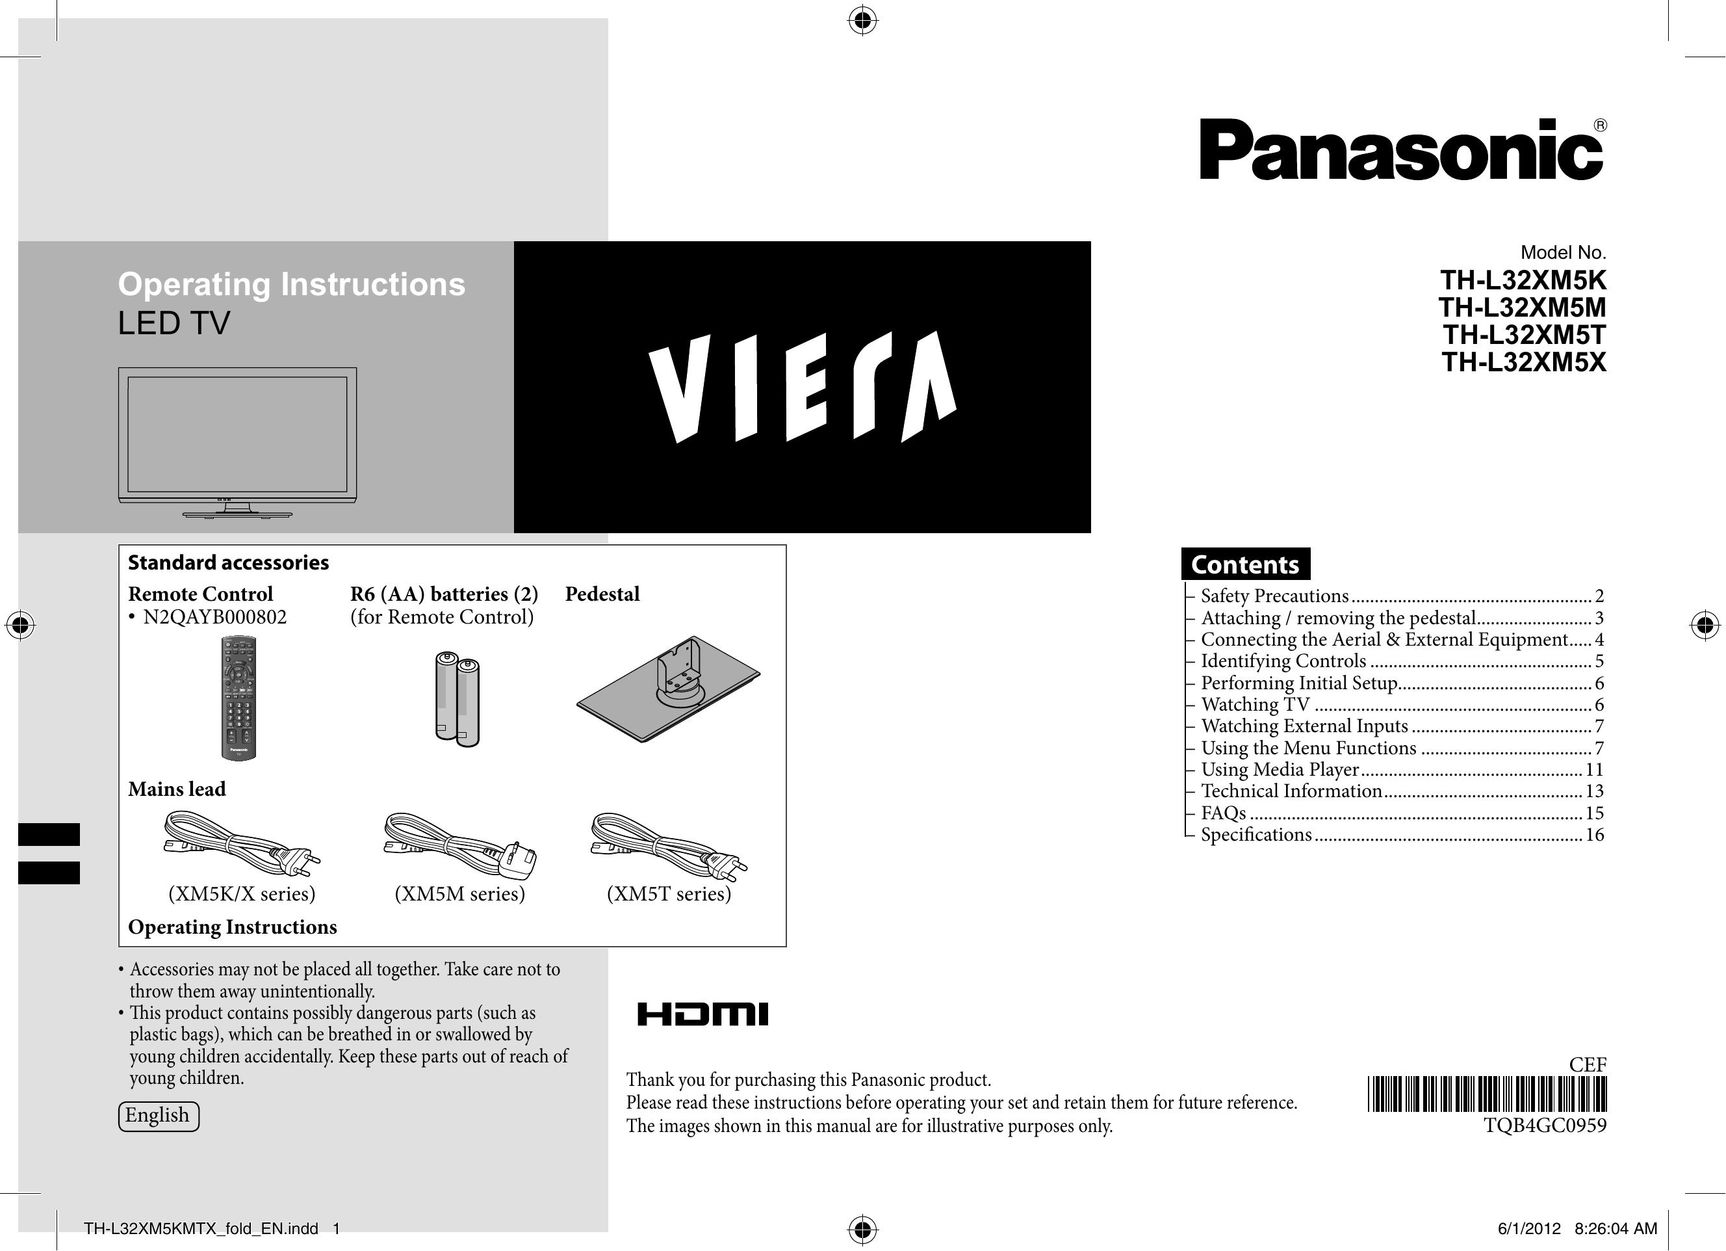 Panasonic TH-L32XM5T Car Satellite TV System User Manual